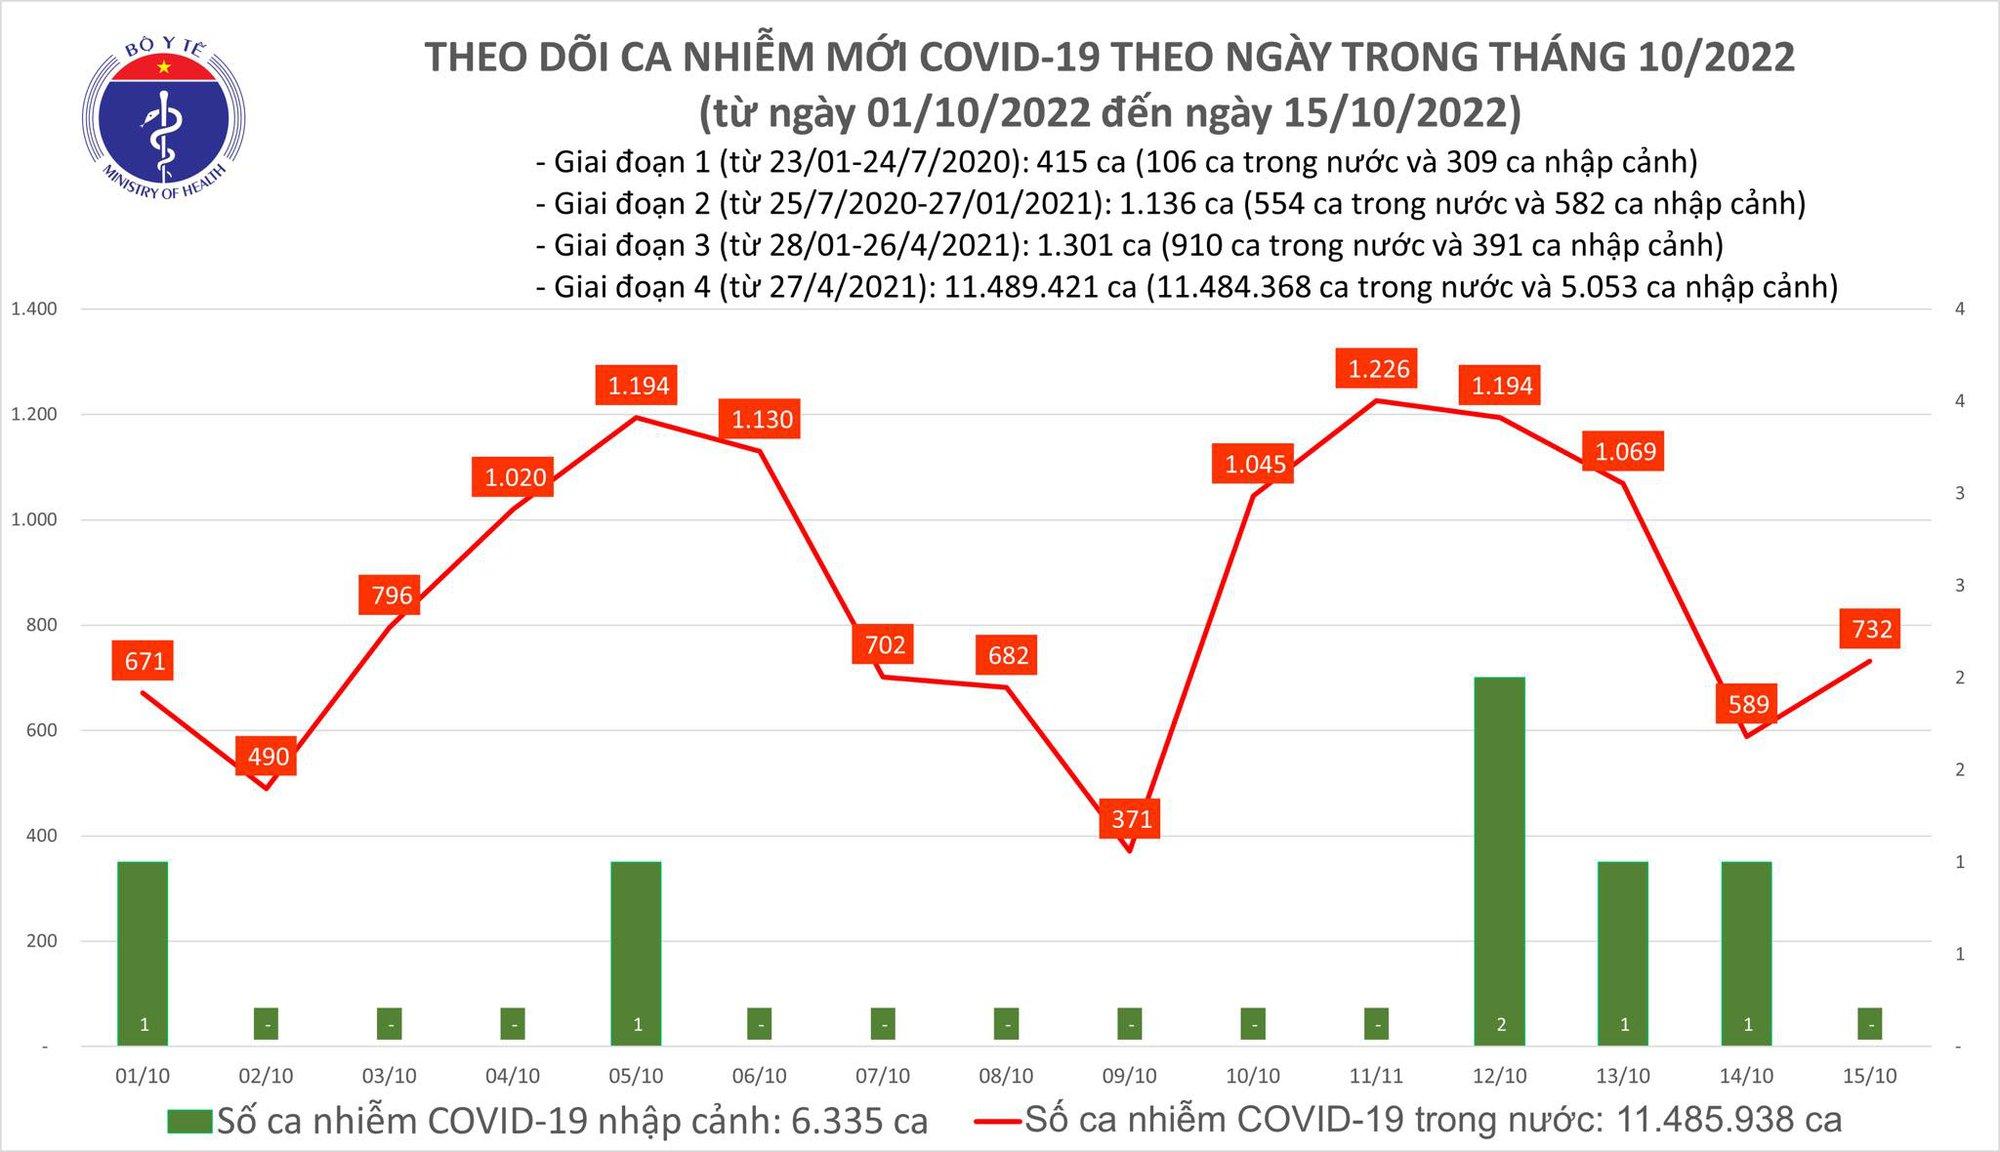 Ngày 15/10: Ca COVID-19 tăng lên 732, không có bệnh nhân tử vong - Ảnh 1.